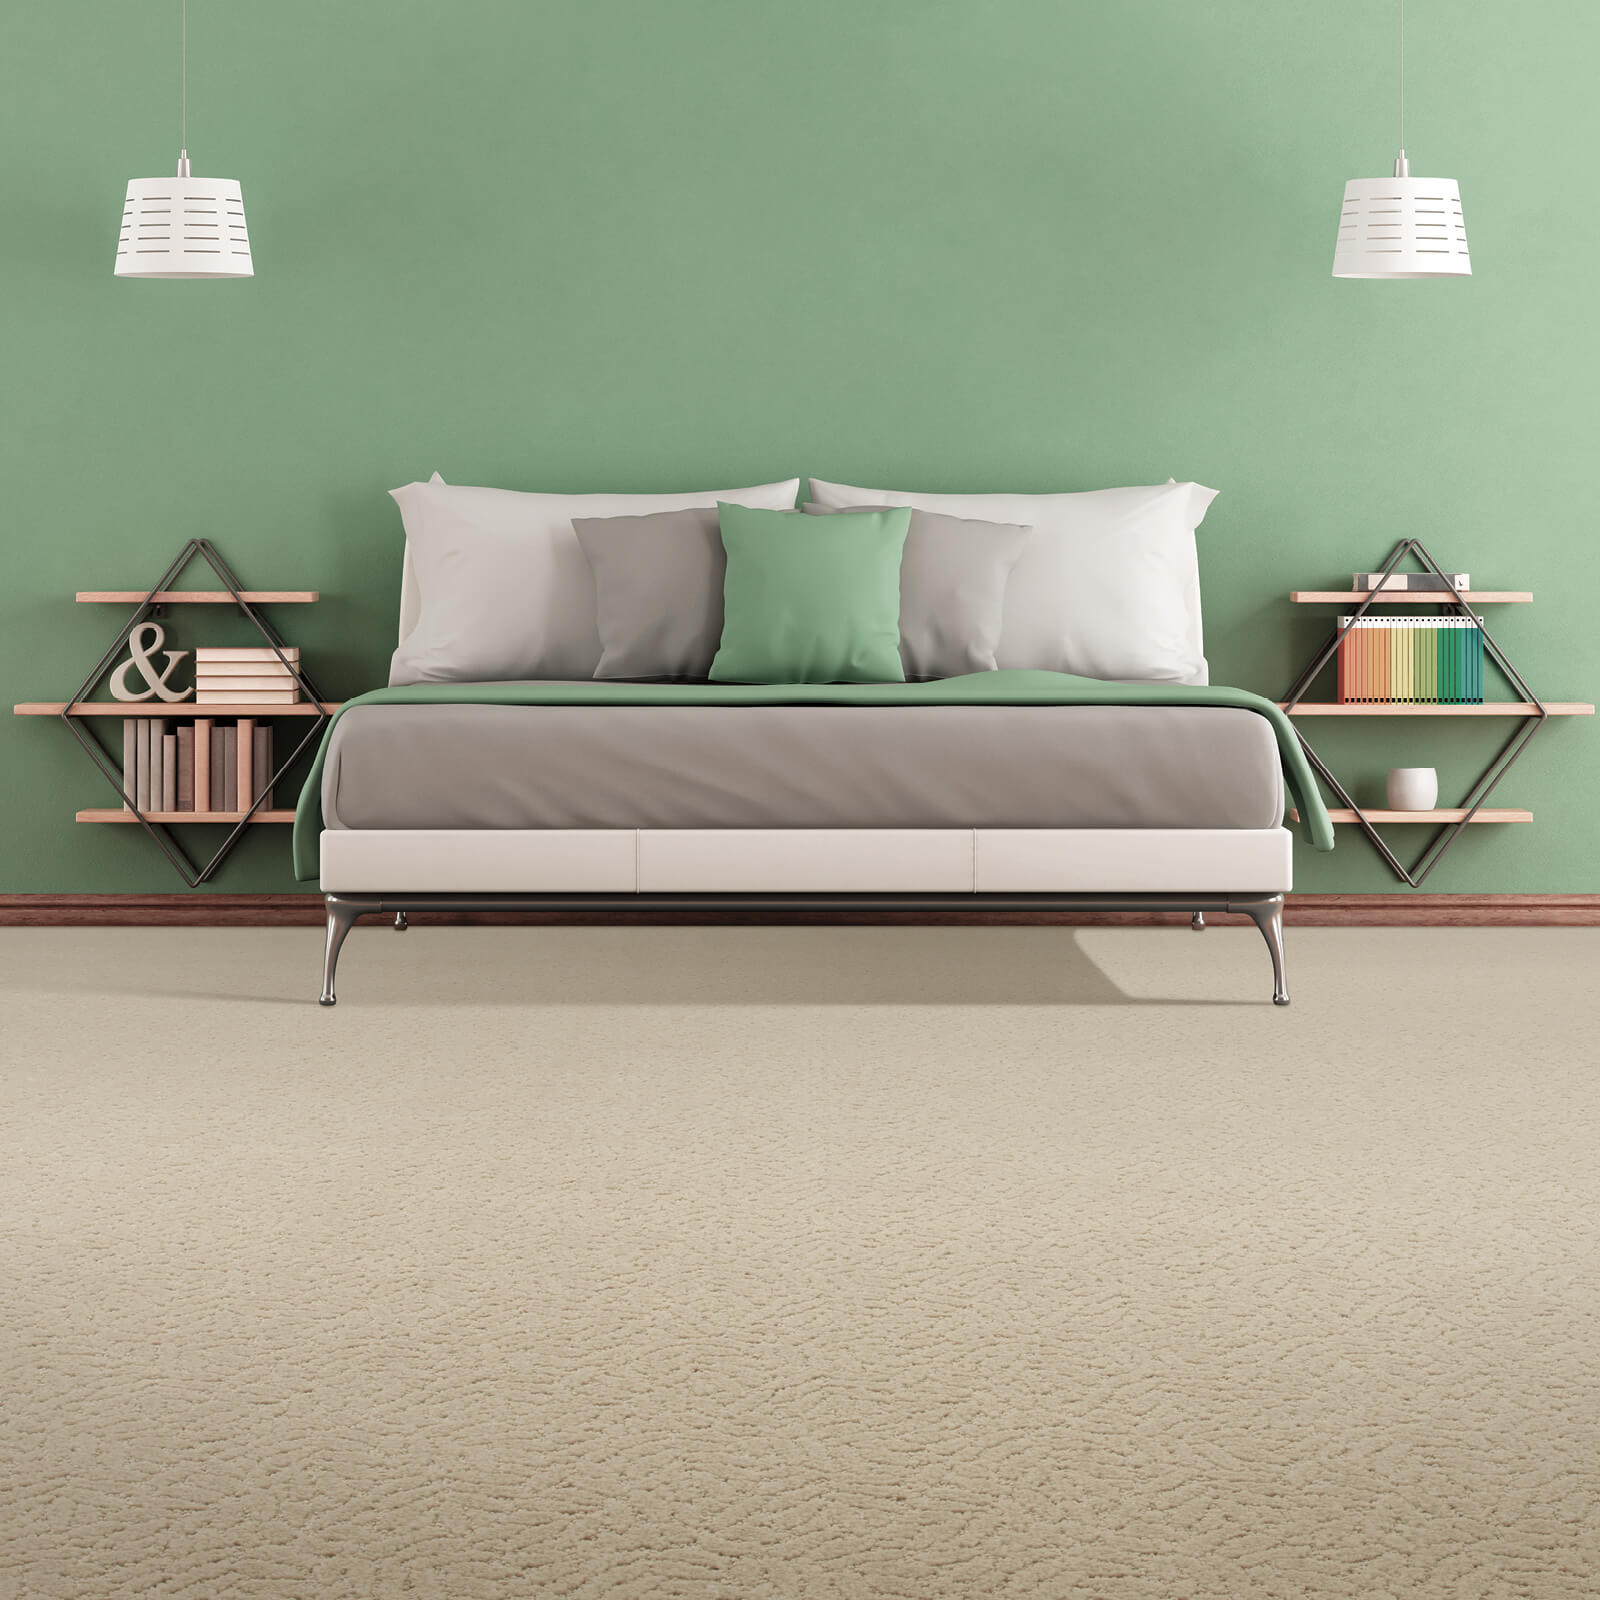 Trendy Carpet for bedroom | Fantastic Floors